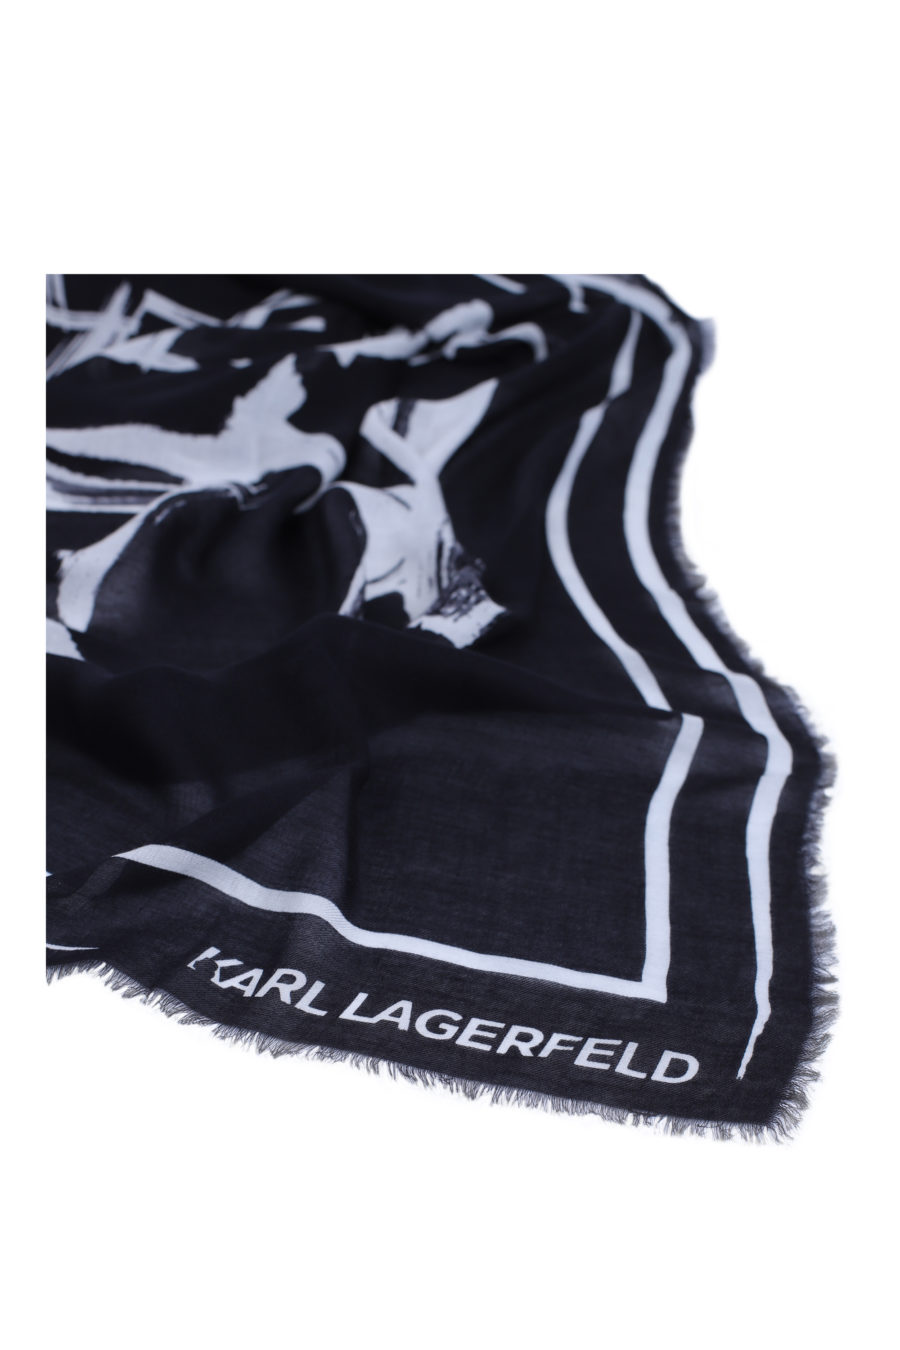 Bufanda negra con logo blanco grande - IMG 9140